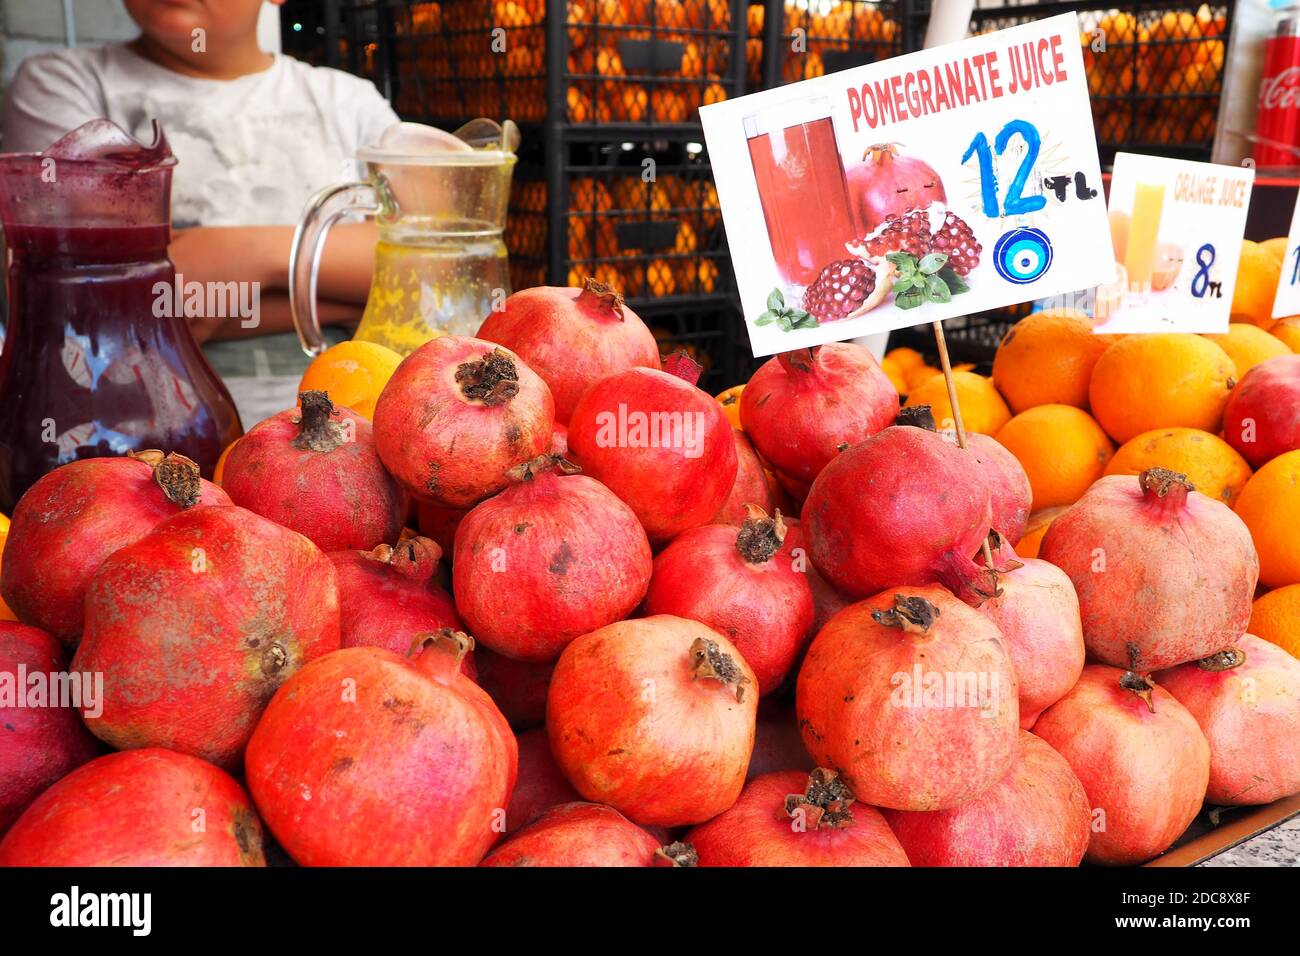 Frisches Obst Granatäpfel und Orangen auf dem lokalen Markt mit Preisschildern für die Zubereitung von Saft: Istanbul, Türkei - 22. August 2018 Stockfoto